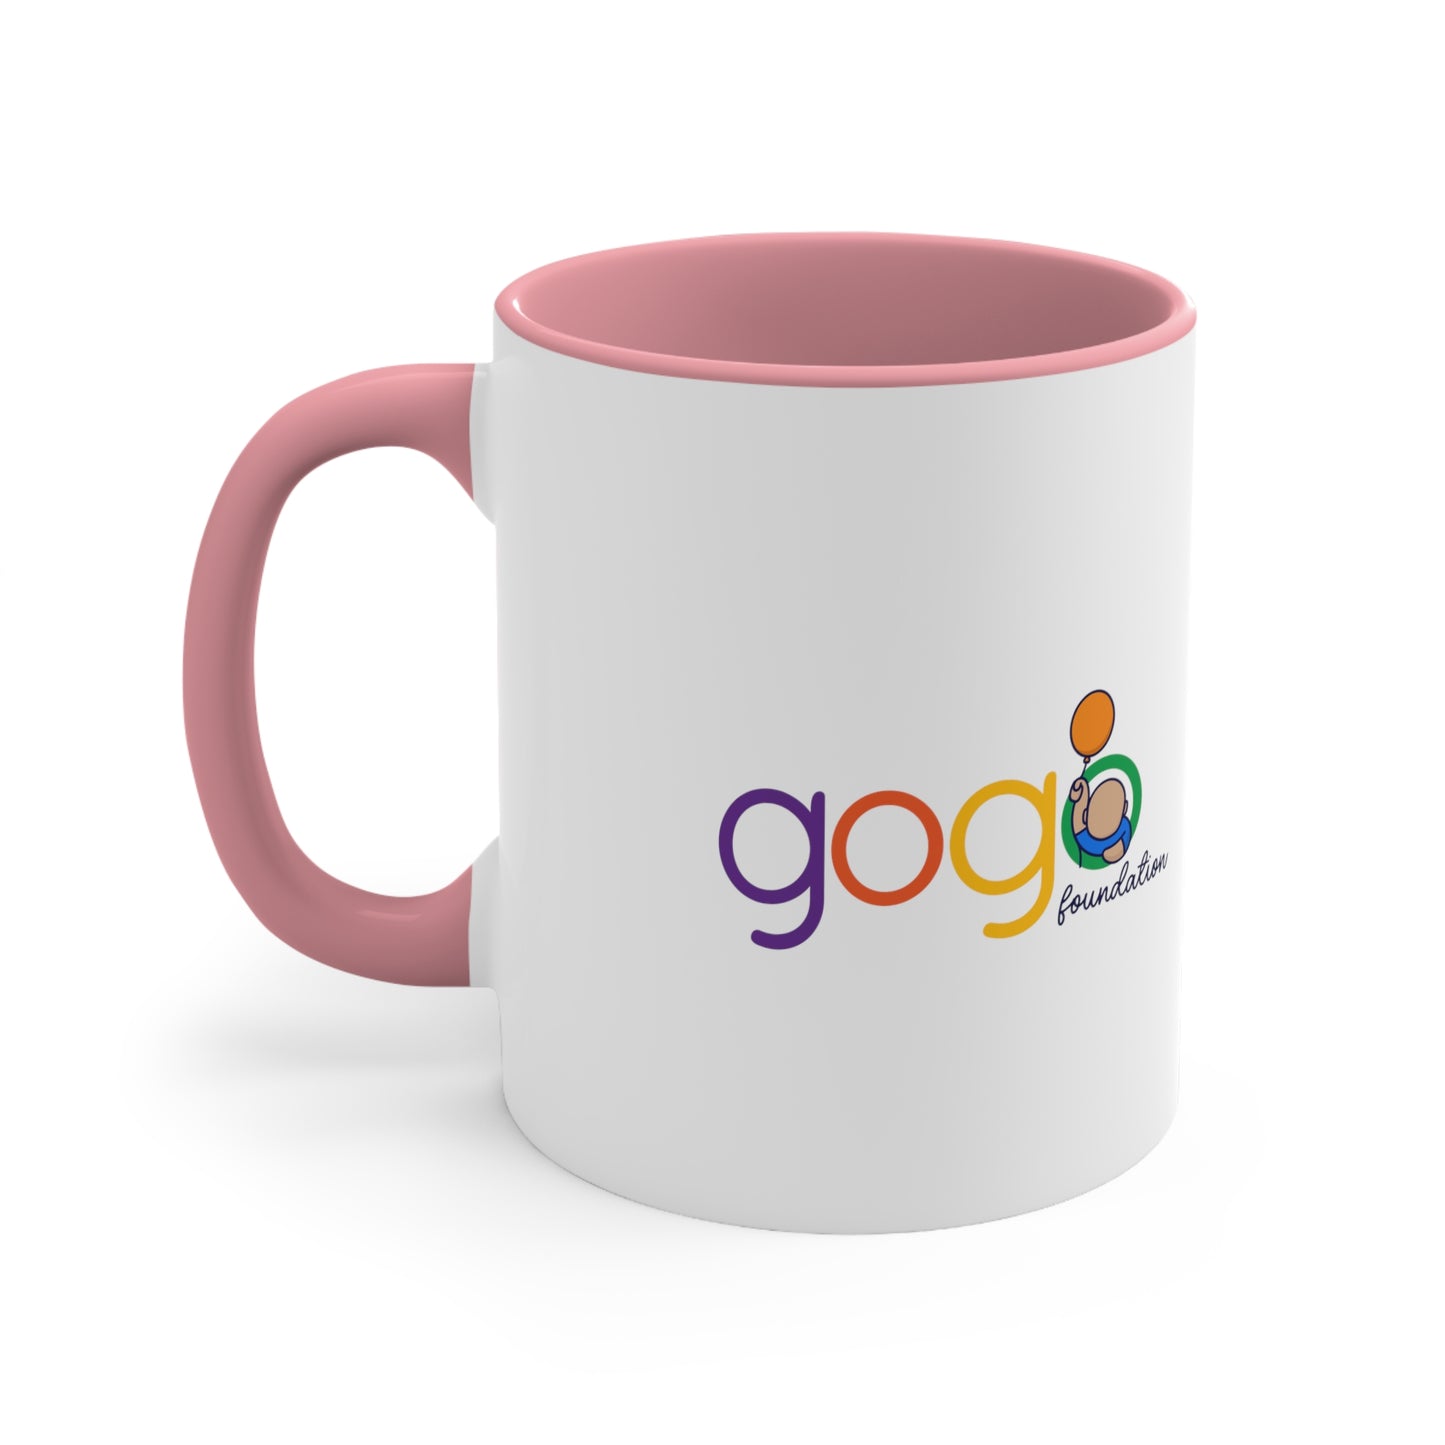 Gogo Coffee Mug